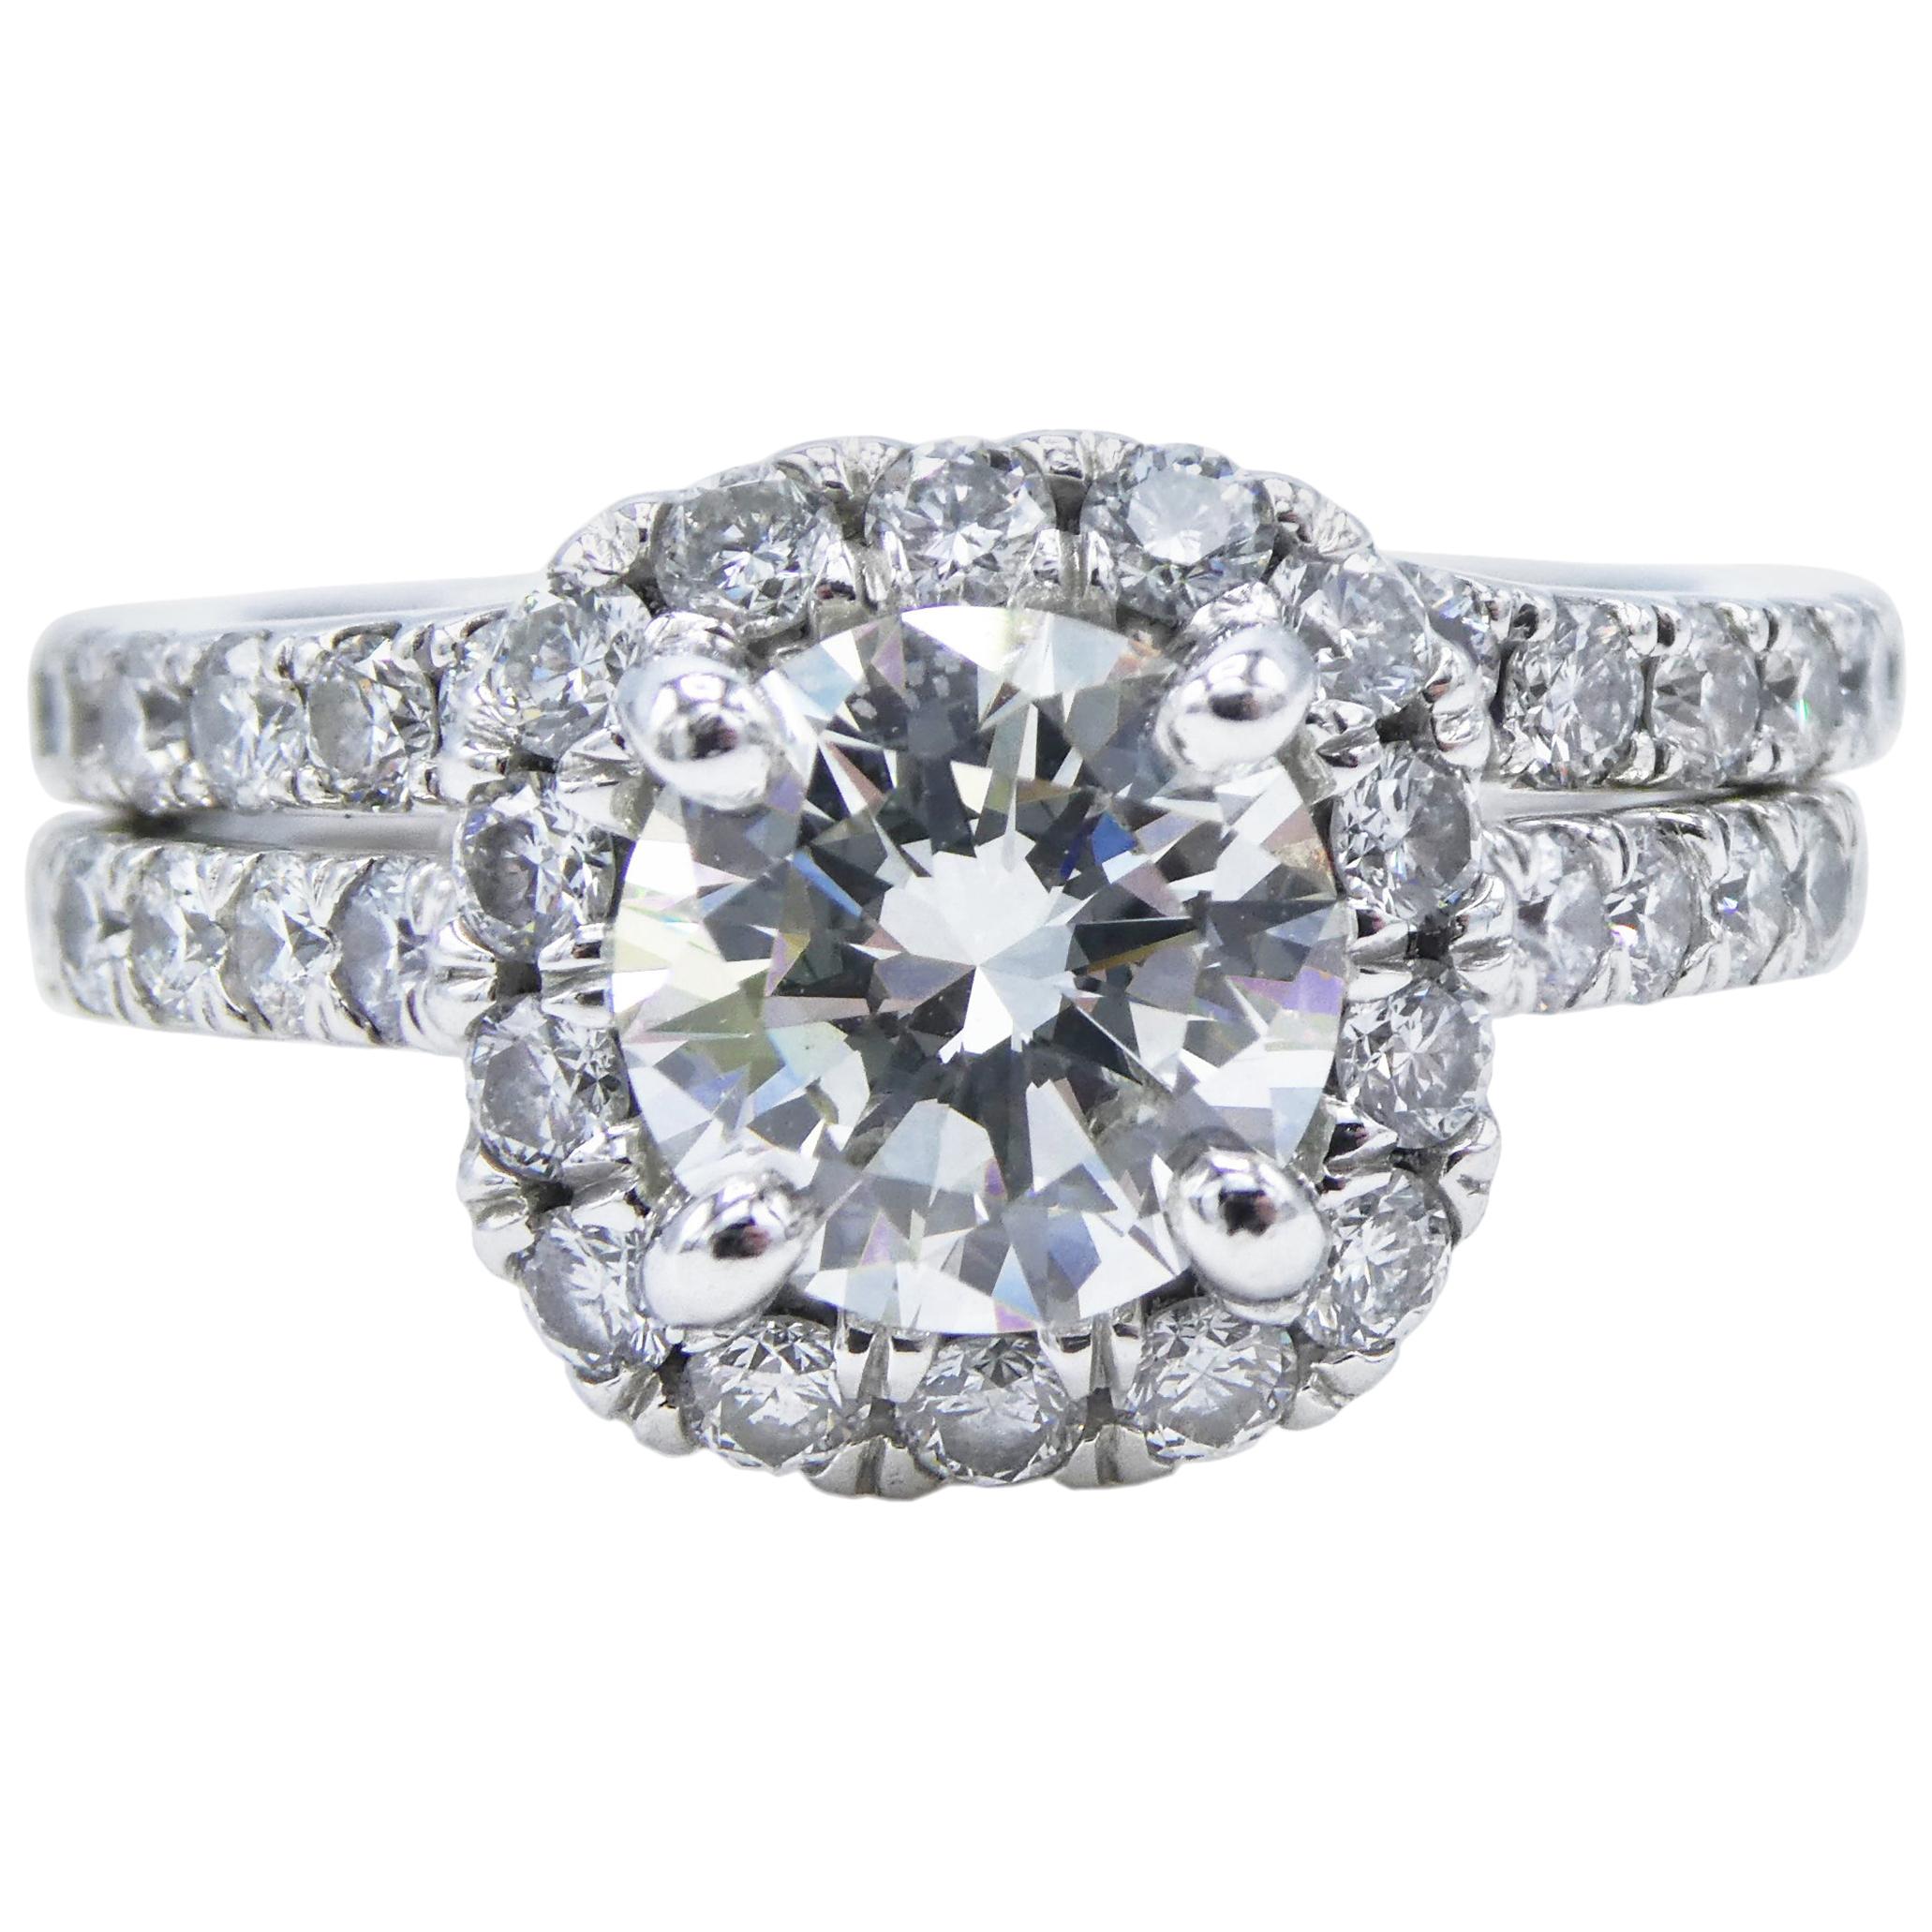 GIA Certified 1.24 Carat Platinum Diamond Halo Engagement Ring Wedding Set